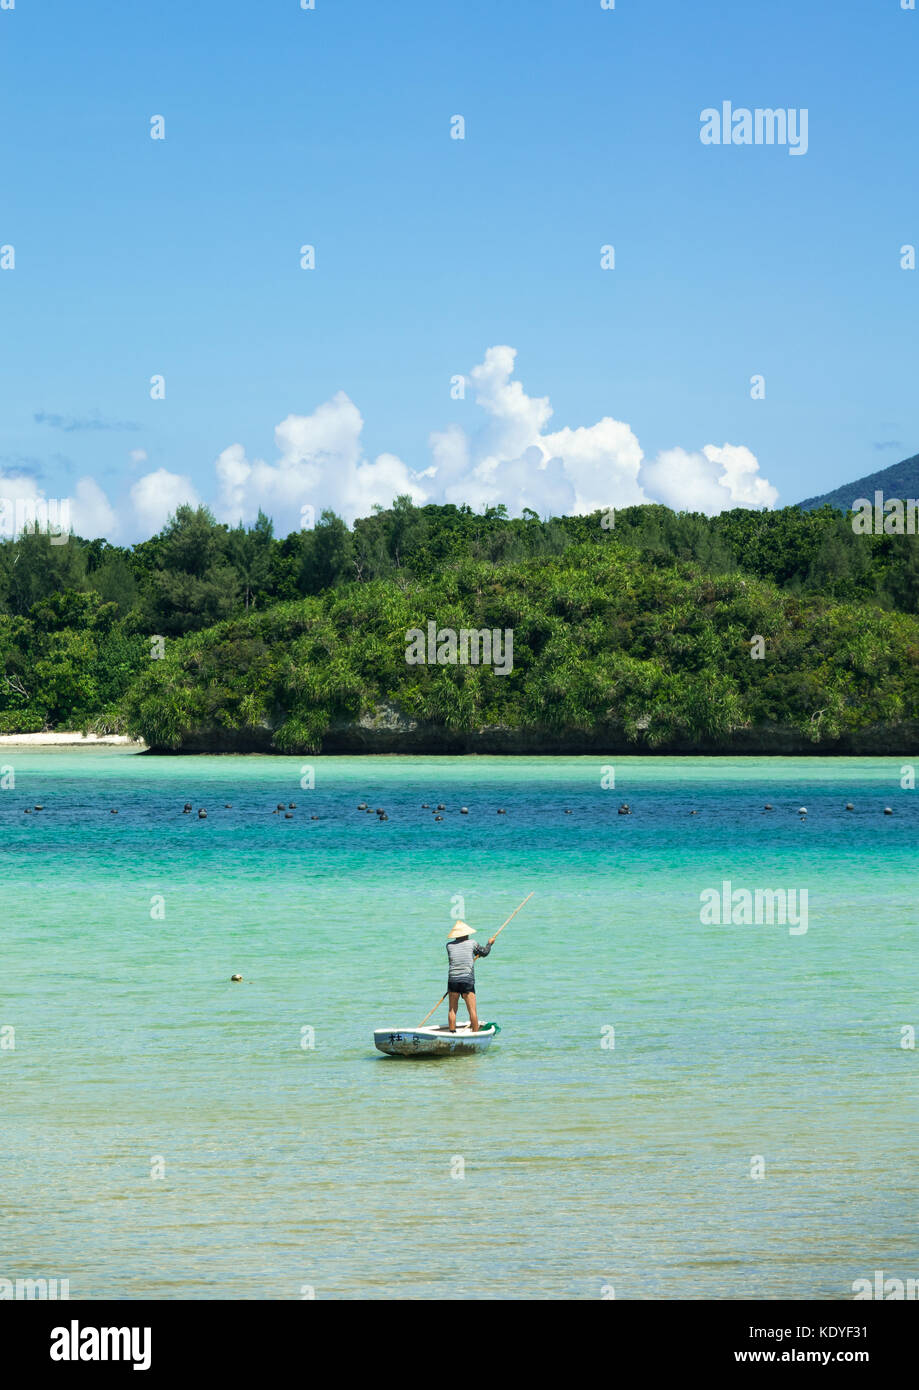 Pêcheur de poissons de la région de Crystal Waters clair de Kabira bay, Île Ishigaki-jima, Îles Yaeyama, Okinawa Prefecture, Japan Banque D'Images